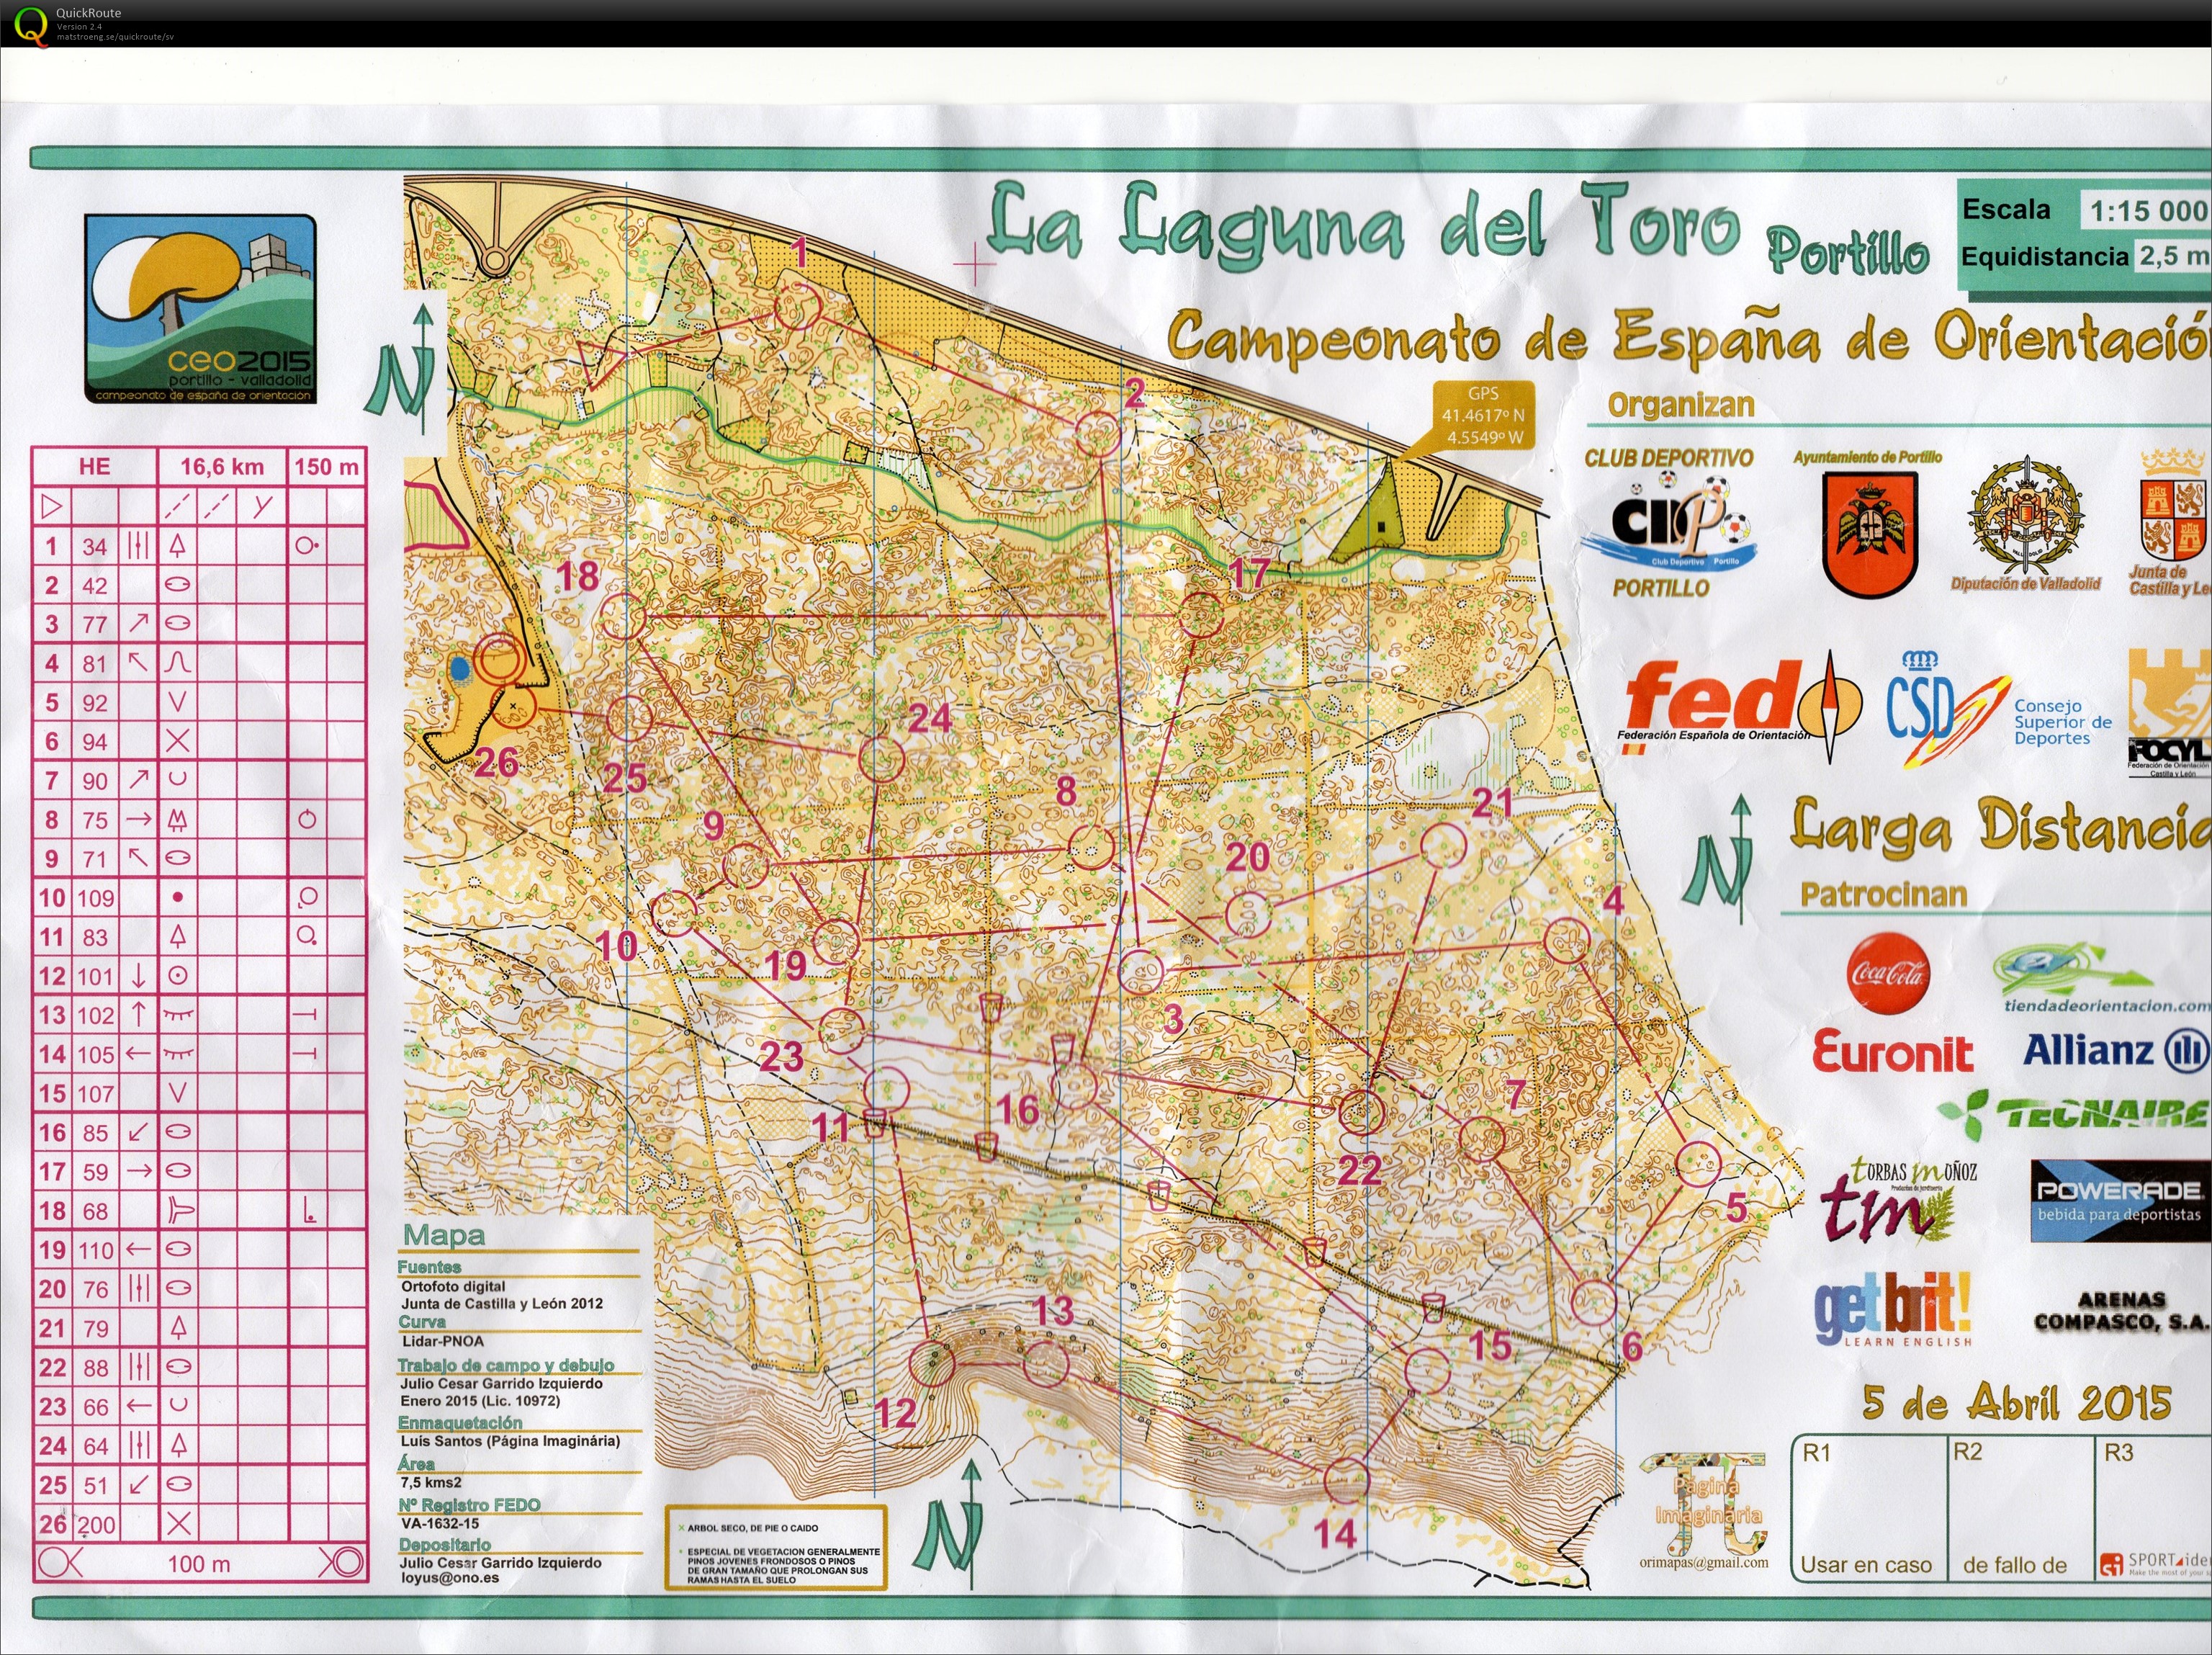 Campeonato de España de orientación (CEO)- Long (2015-04-05)